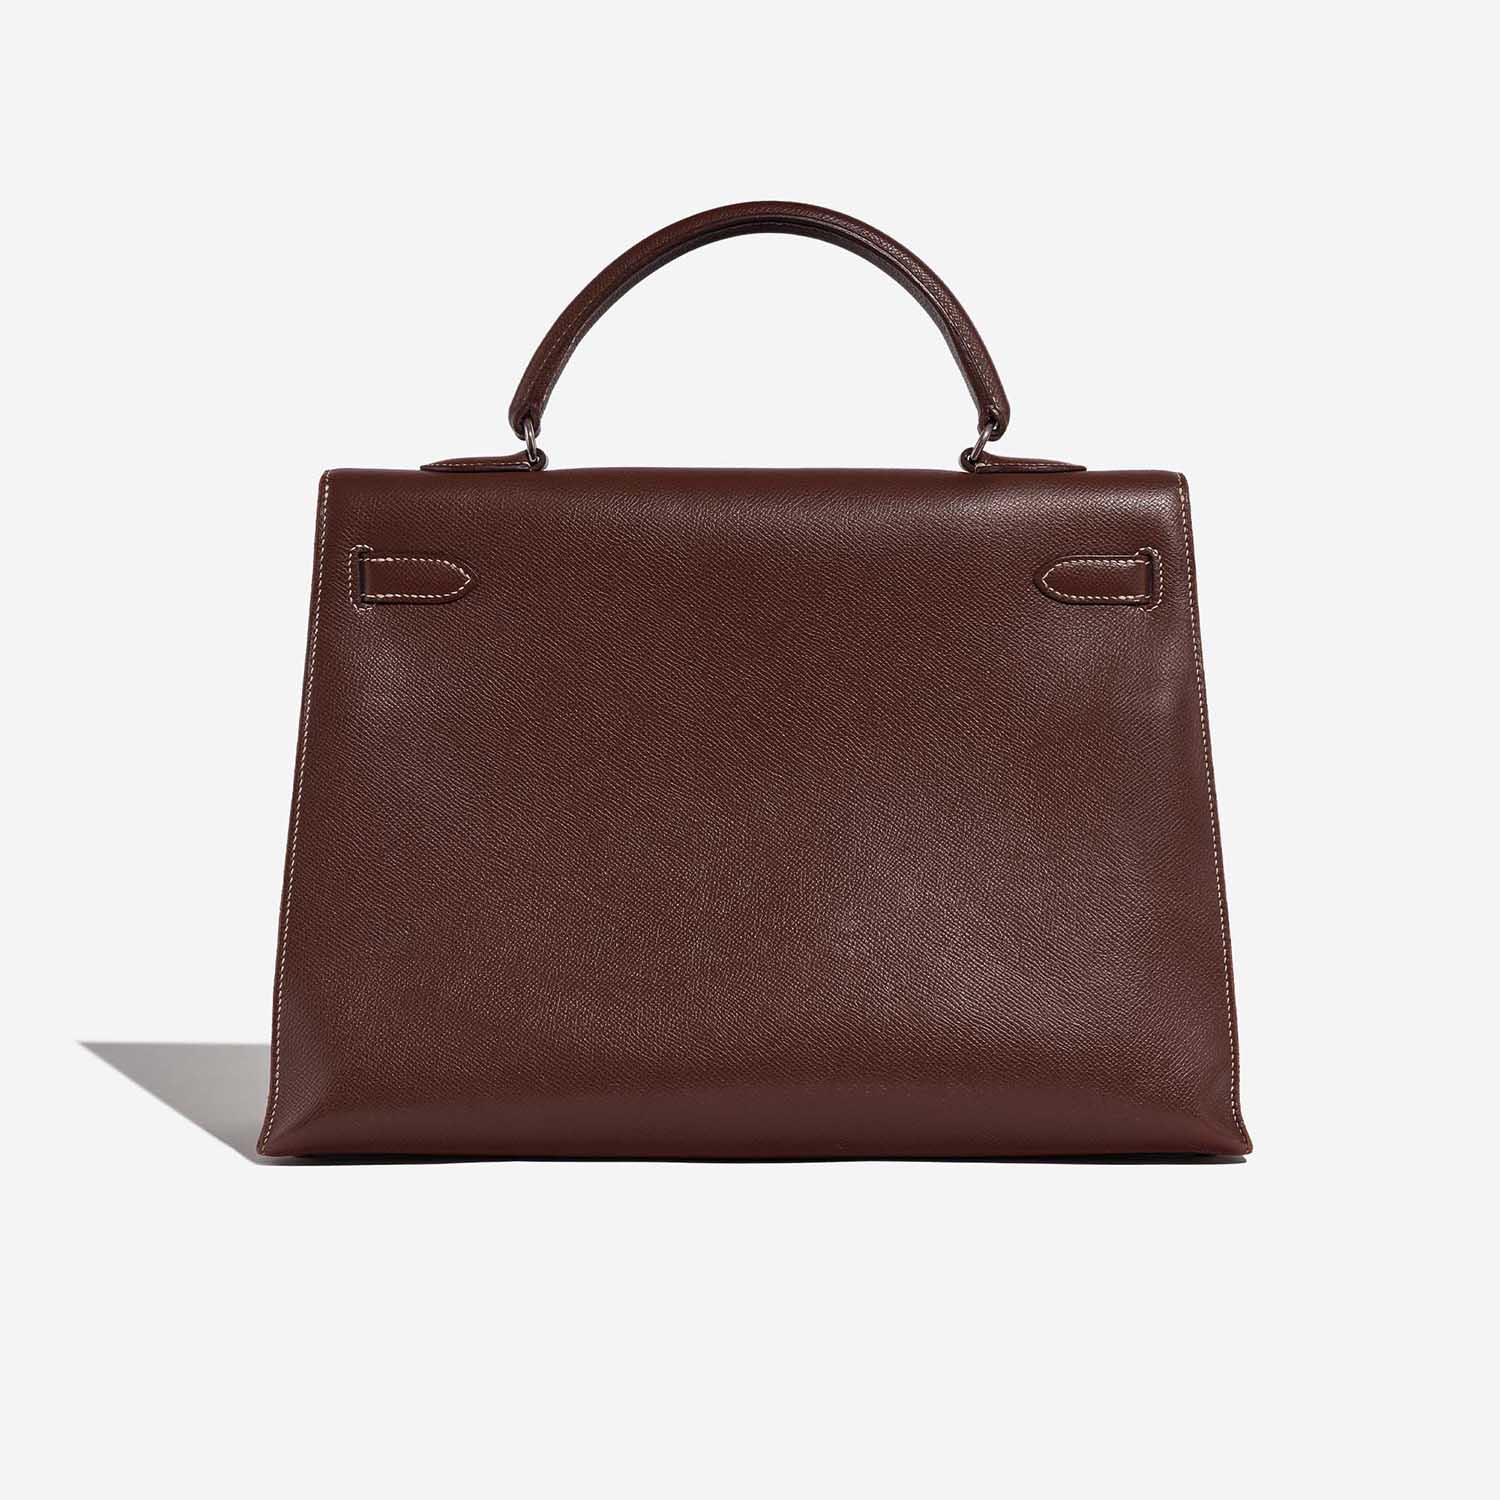 Hermès Kelly 35 Brulee Back | Verkaufen Sie Ihre Designertasche auf Saclab.com